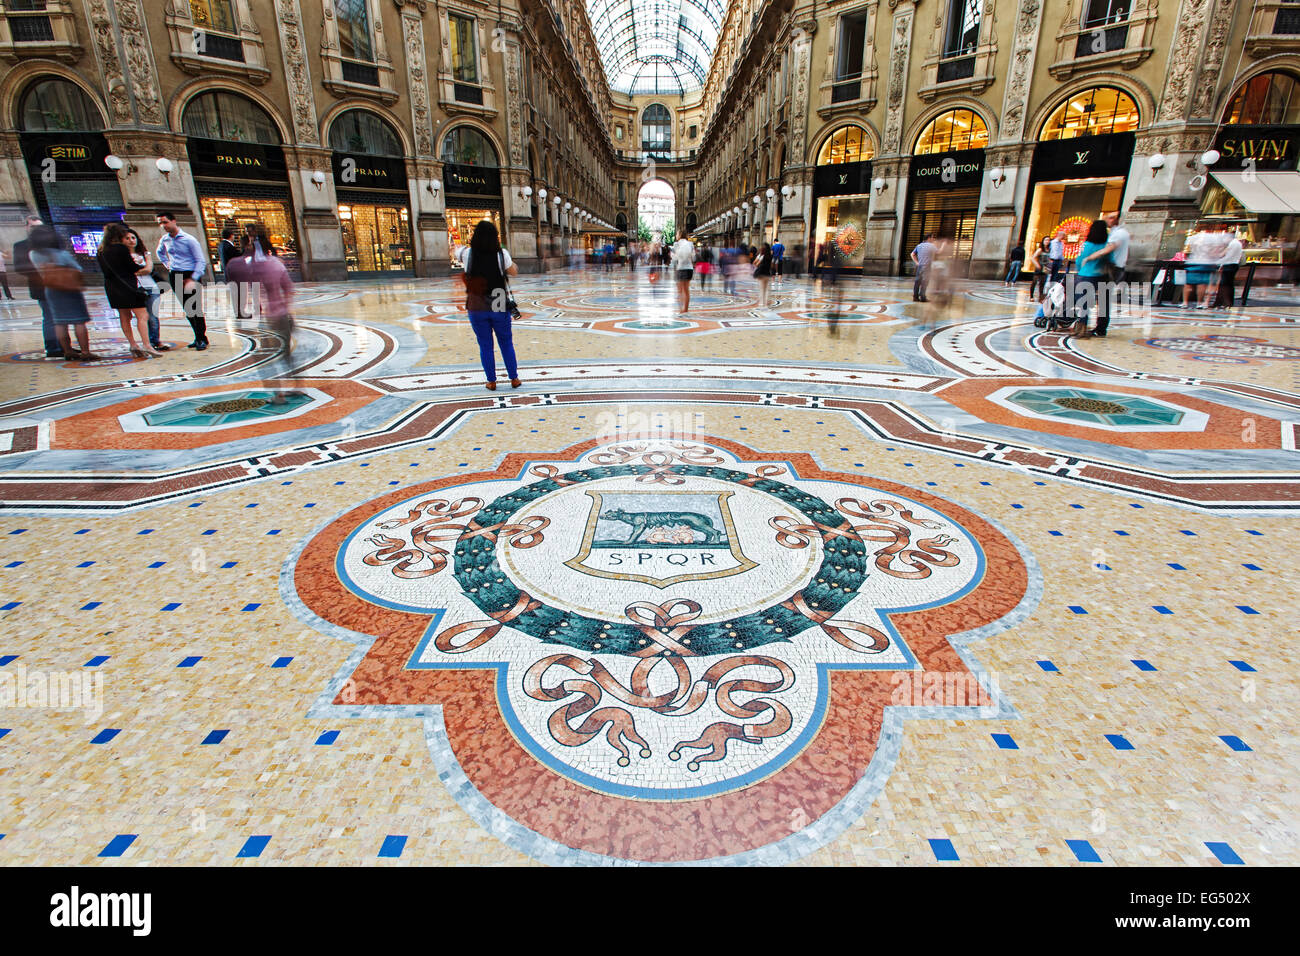 Pavimento a mosaico, i negozi e gli amanti dello shopping, la Galleria Vittorio Emanuele, Milano, Italia Foto Stock